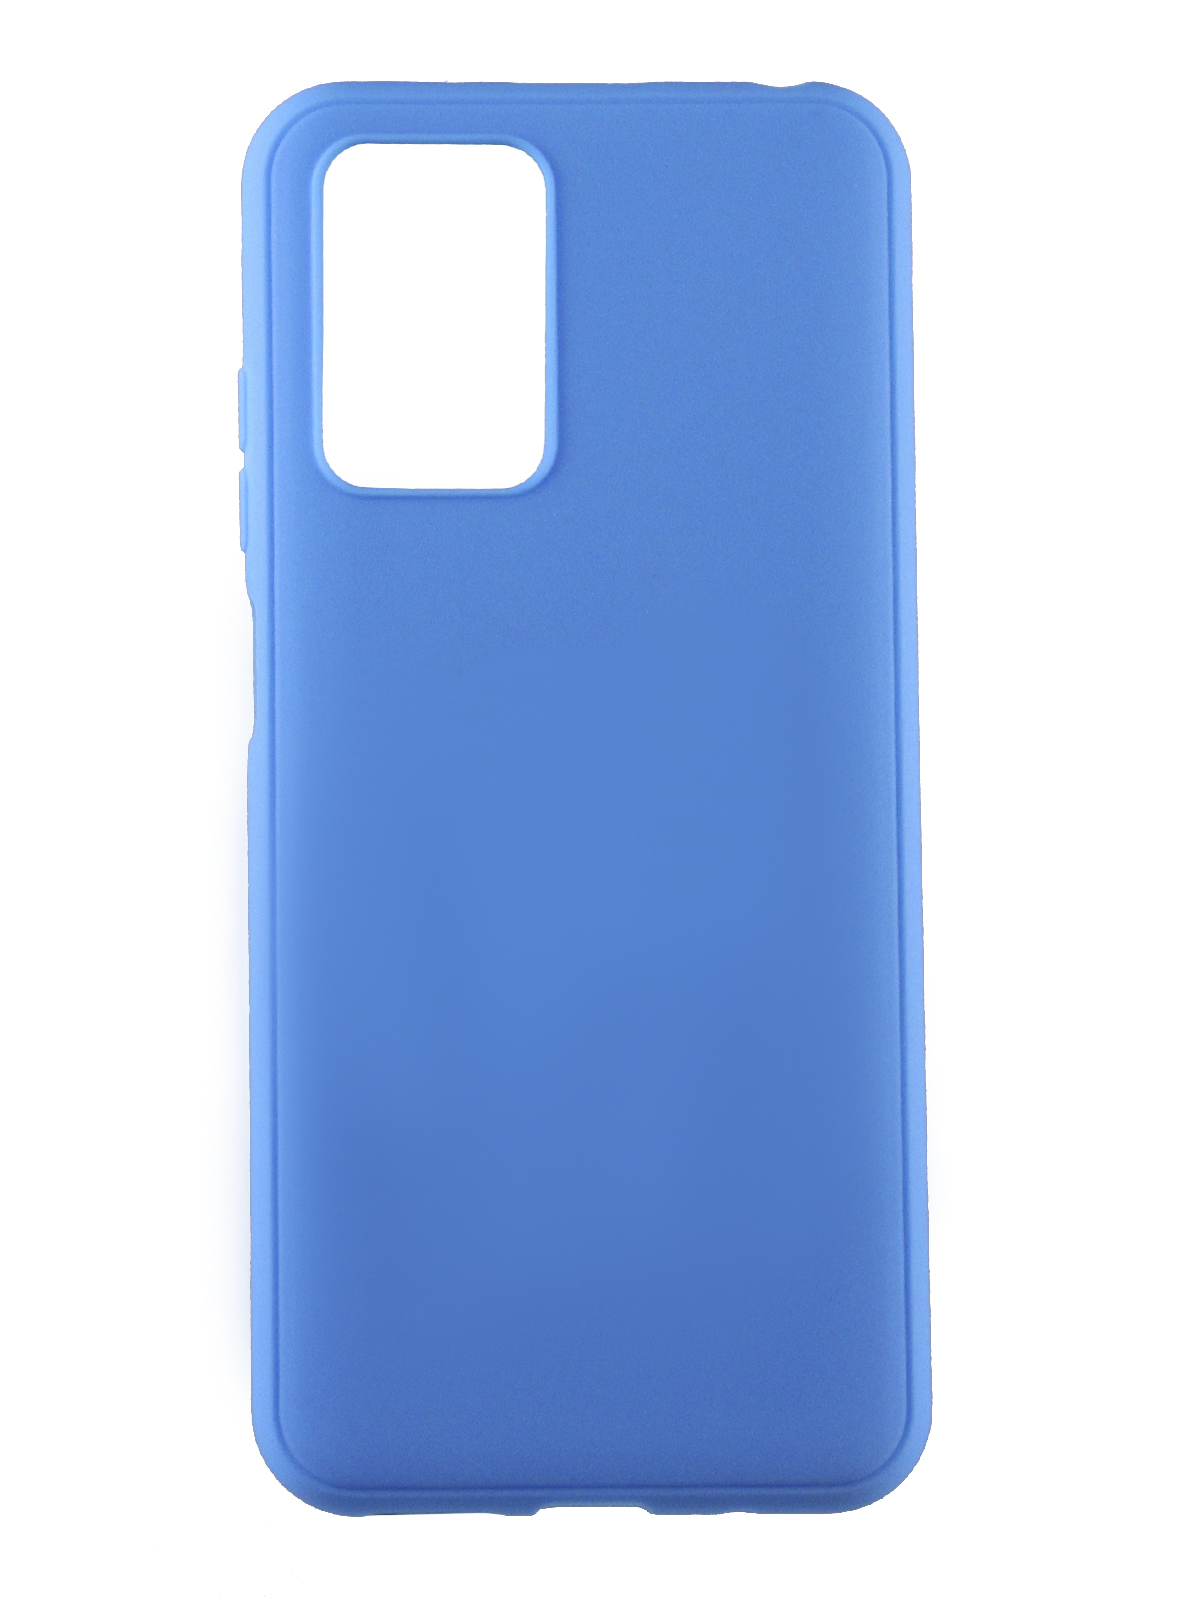 Защитный чехол LuxCase для Xiaomi Redmi 10 TPU 1.1mm Blue 62349 чехол защитный усиленный tpu luxcase для xiaomi redmi 9c прозрачный 1 5 мм